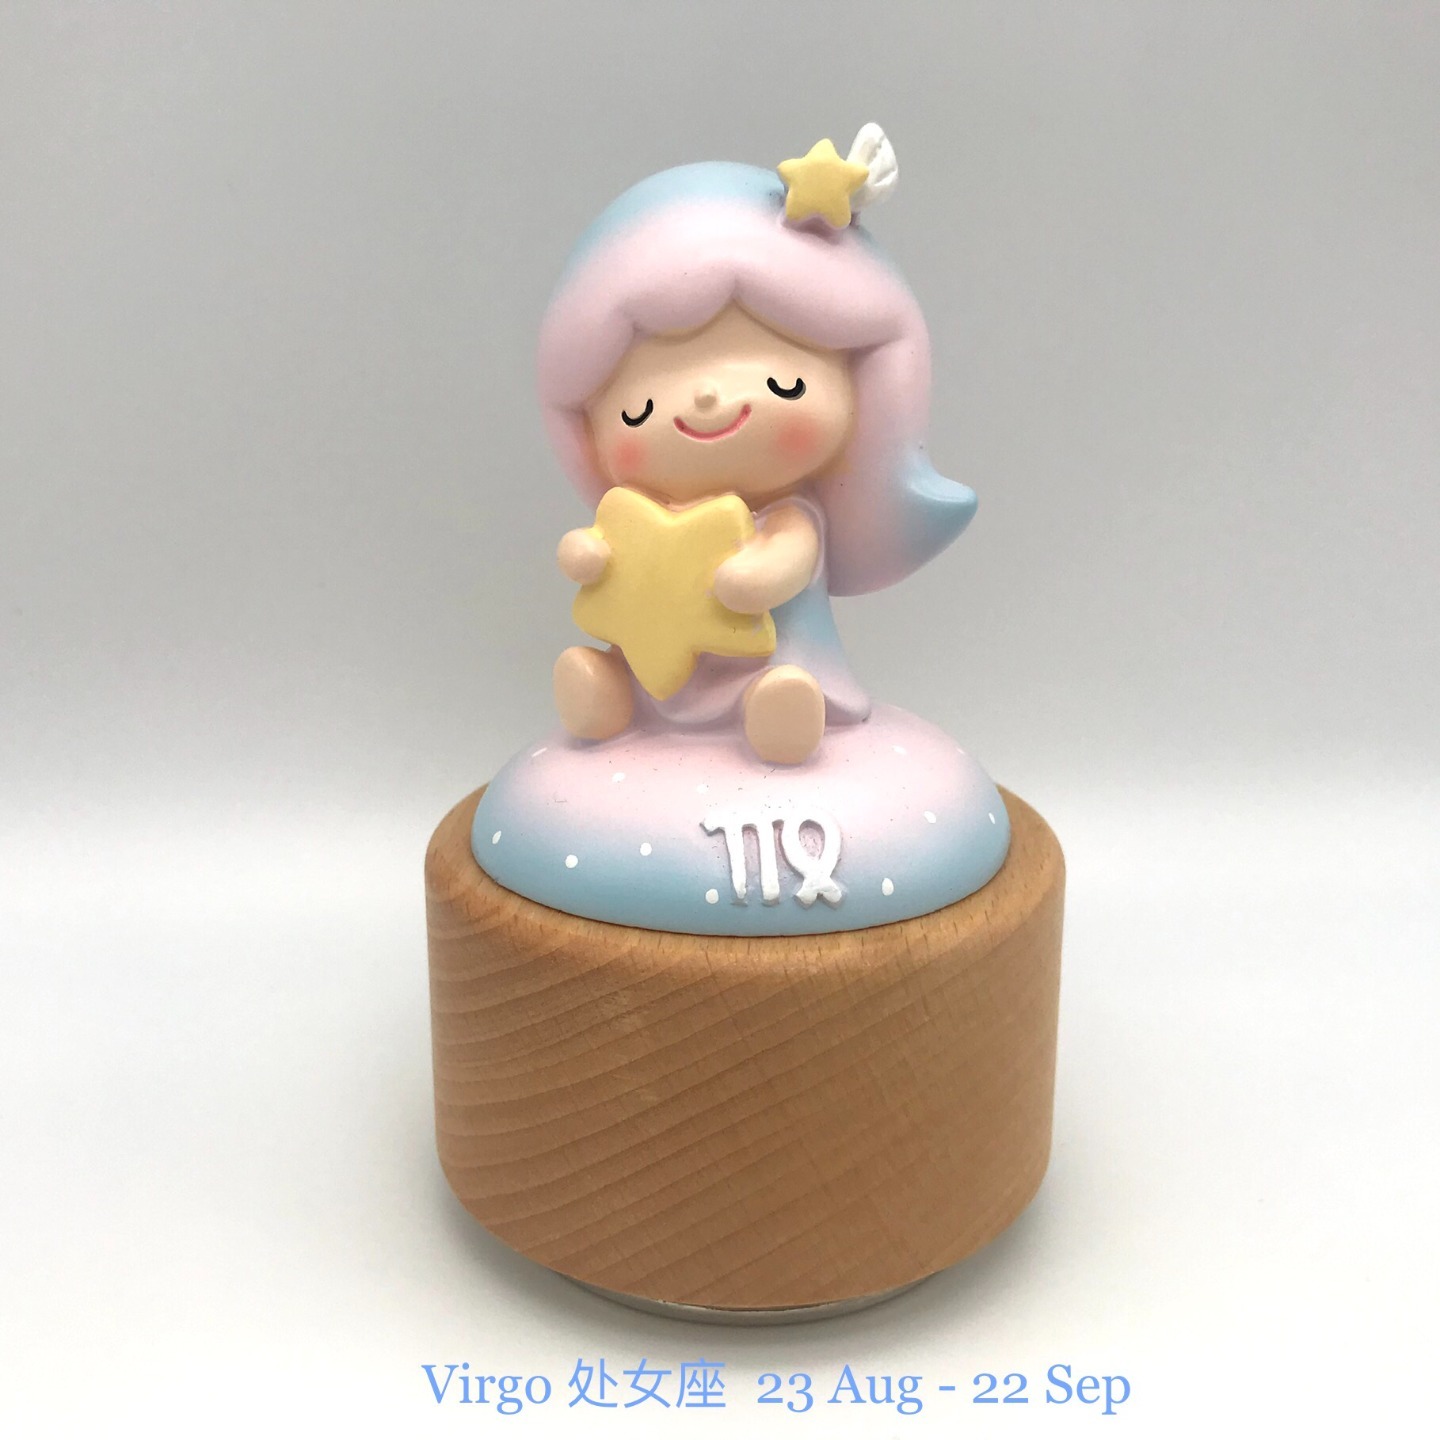 Horoscope Music Box - Virgo